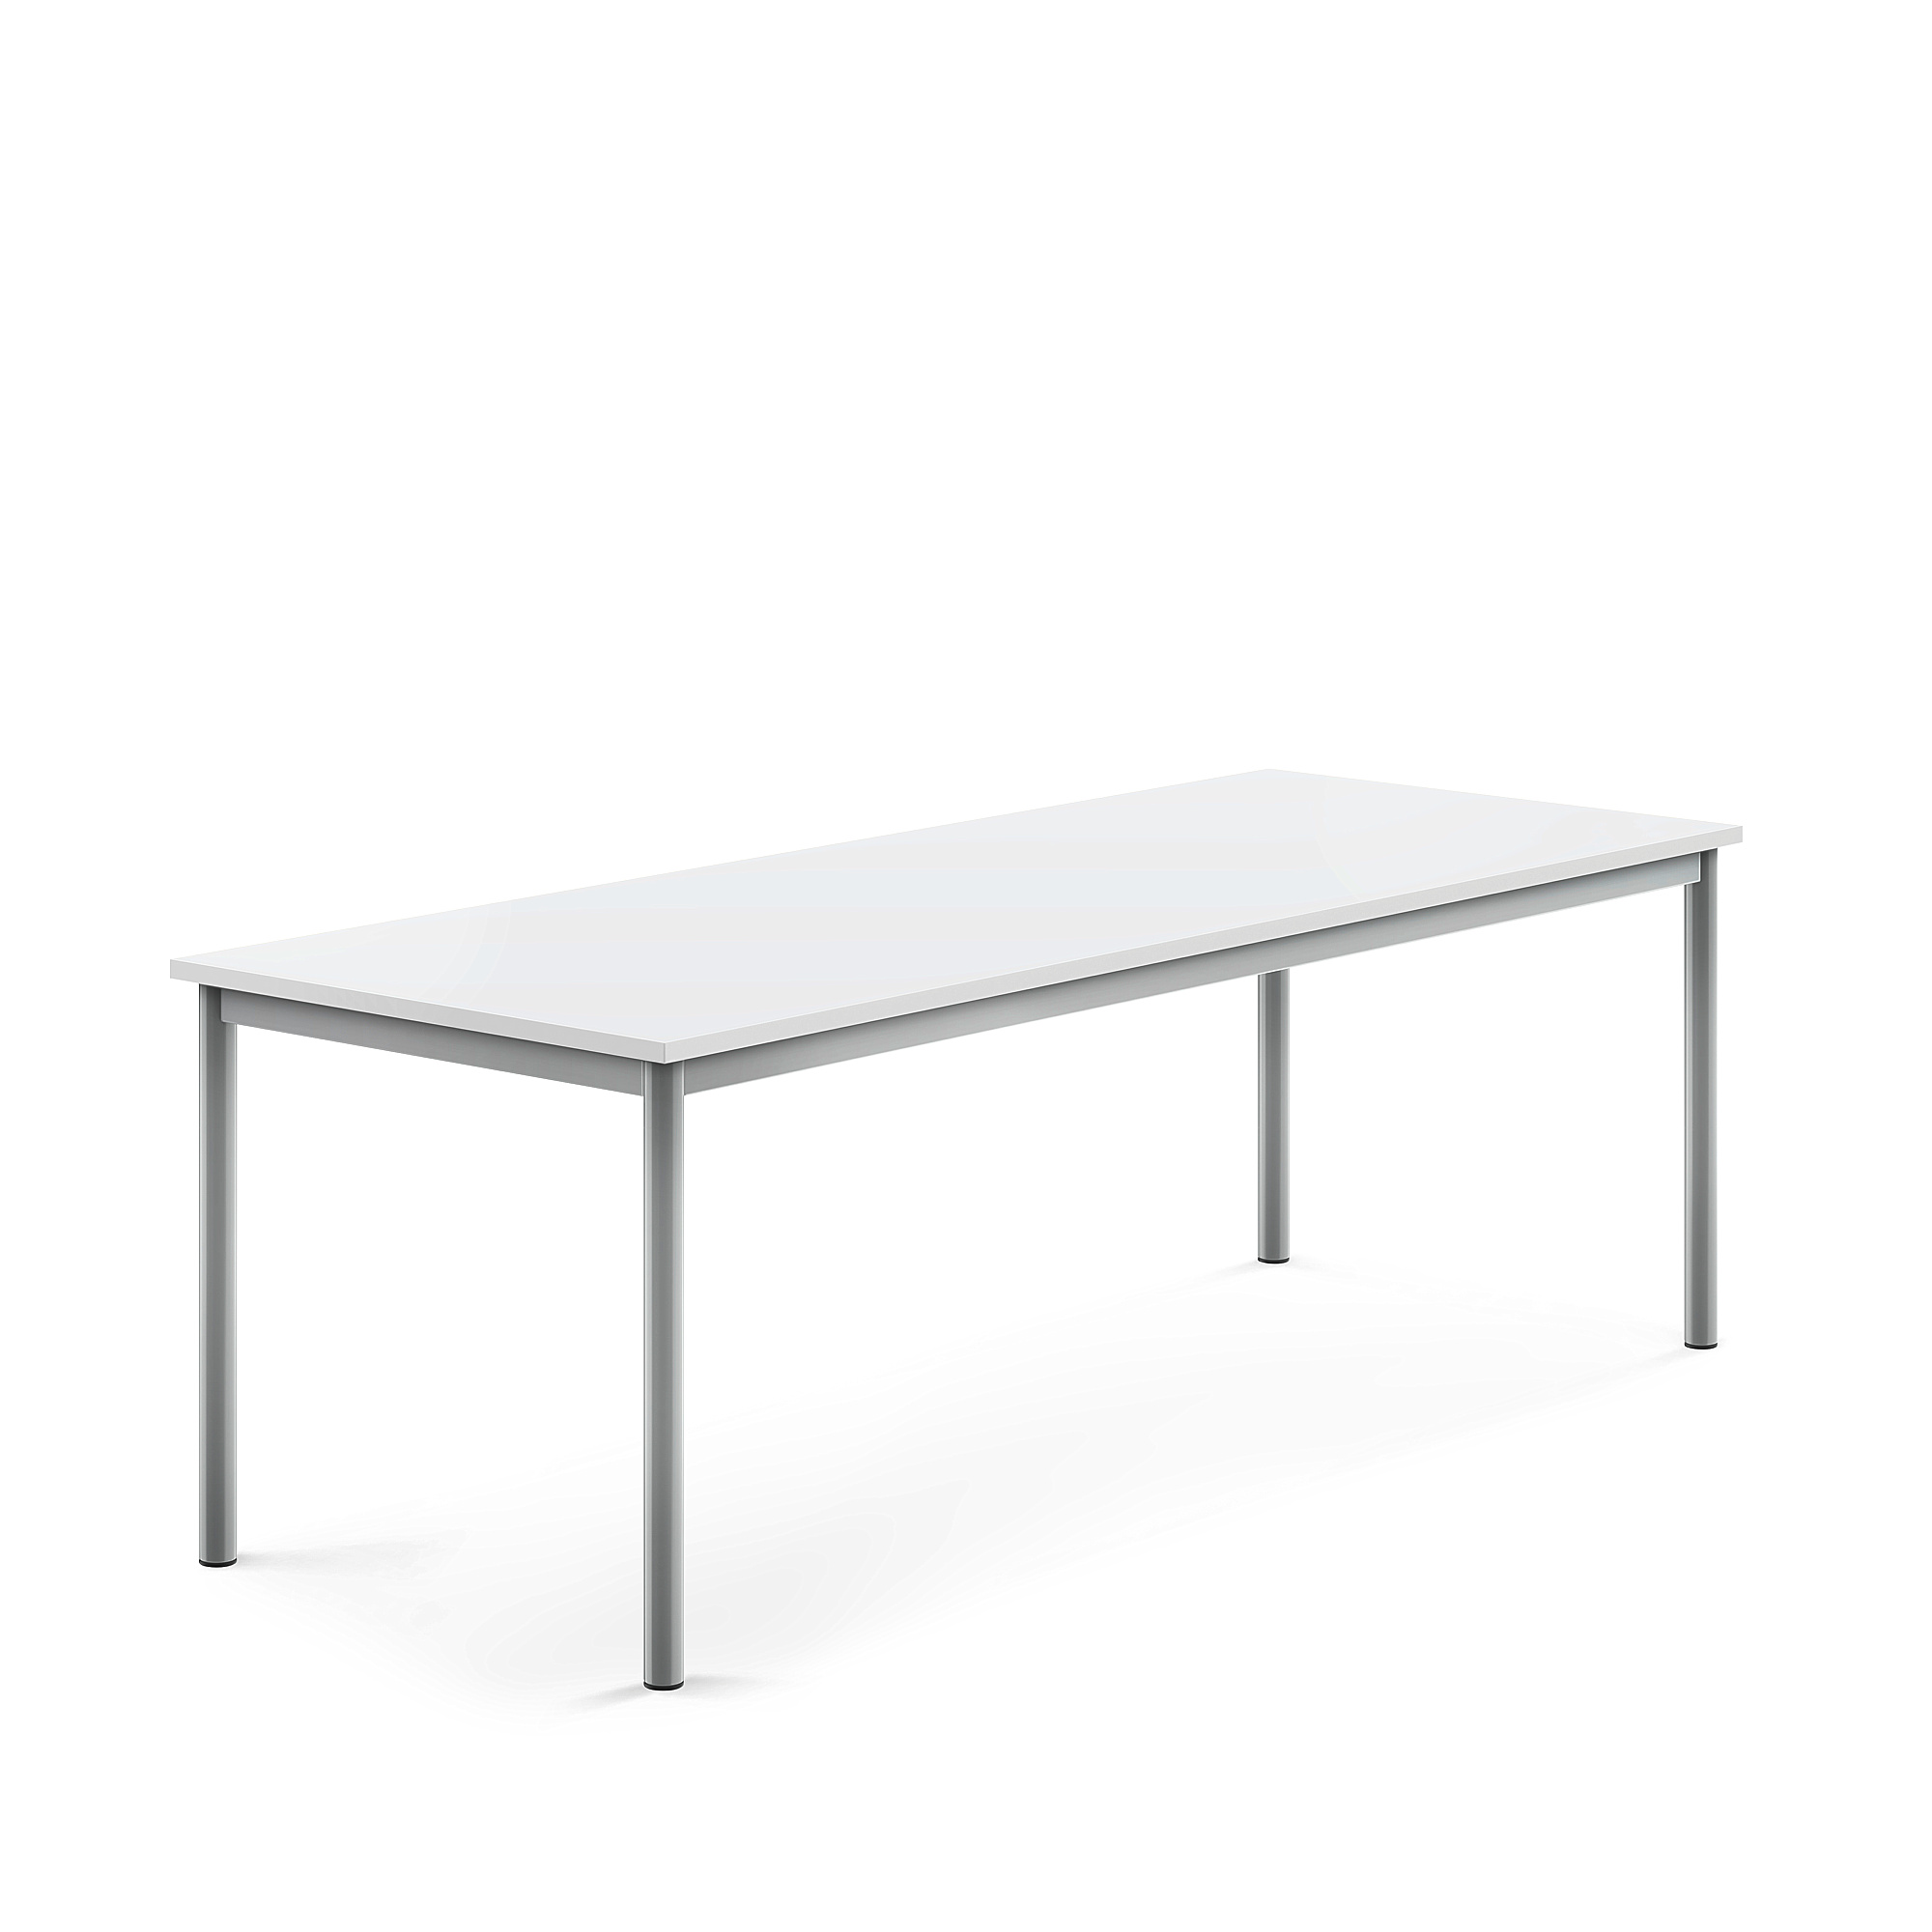 Stůl BORÅS, 1800x700x600 mm, stříbrné nohy, HPL deska, bílá